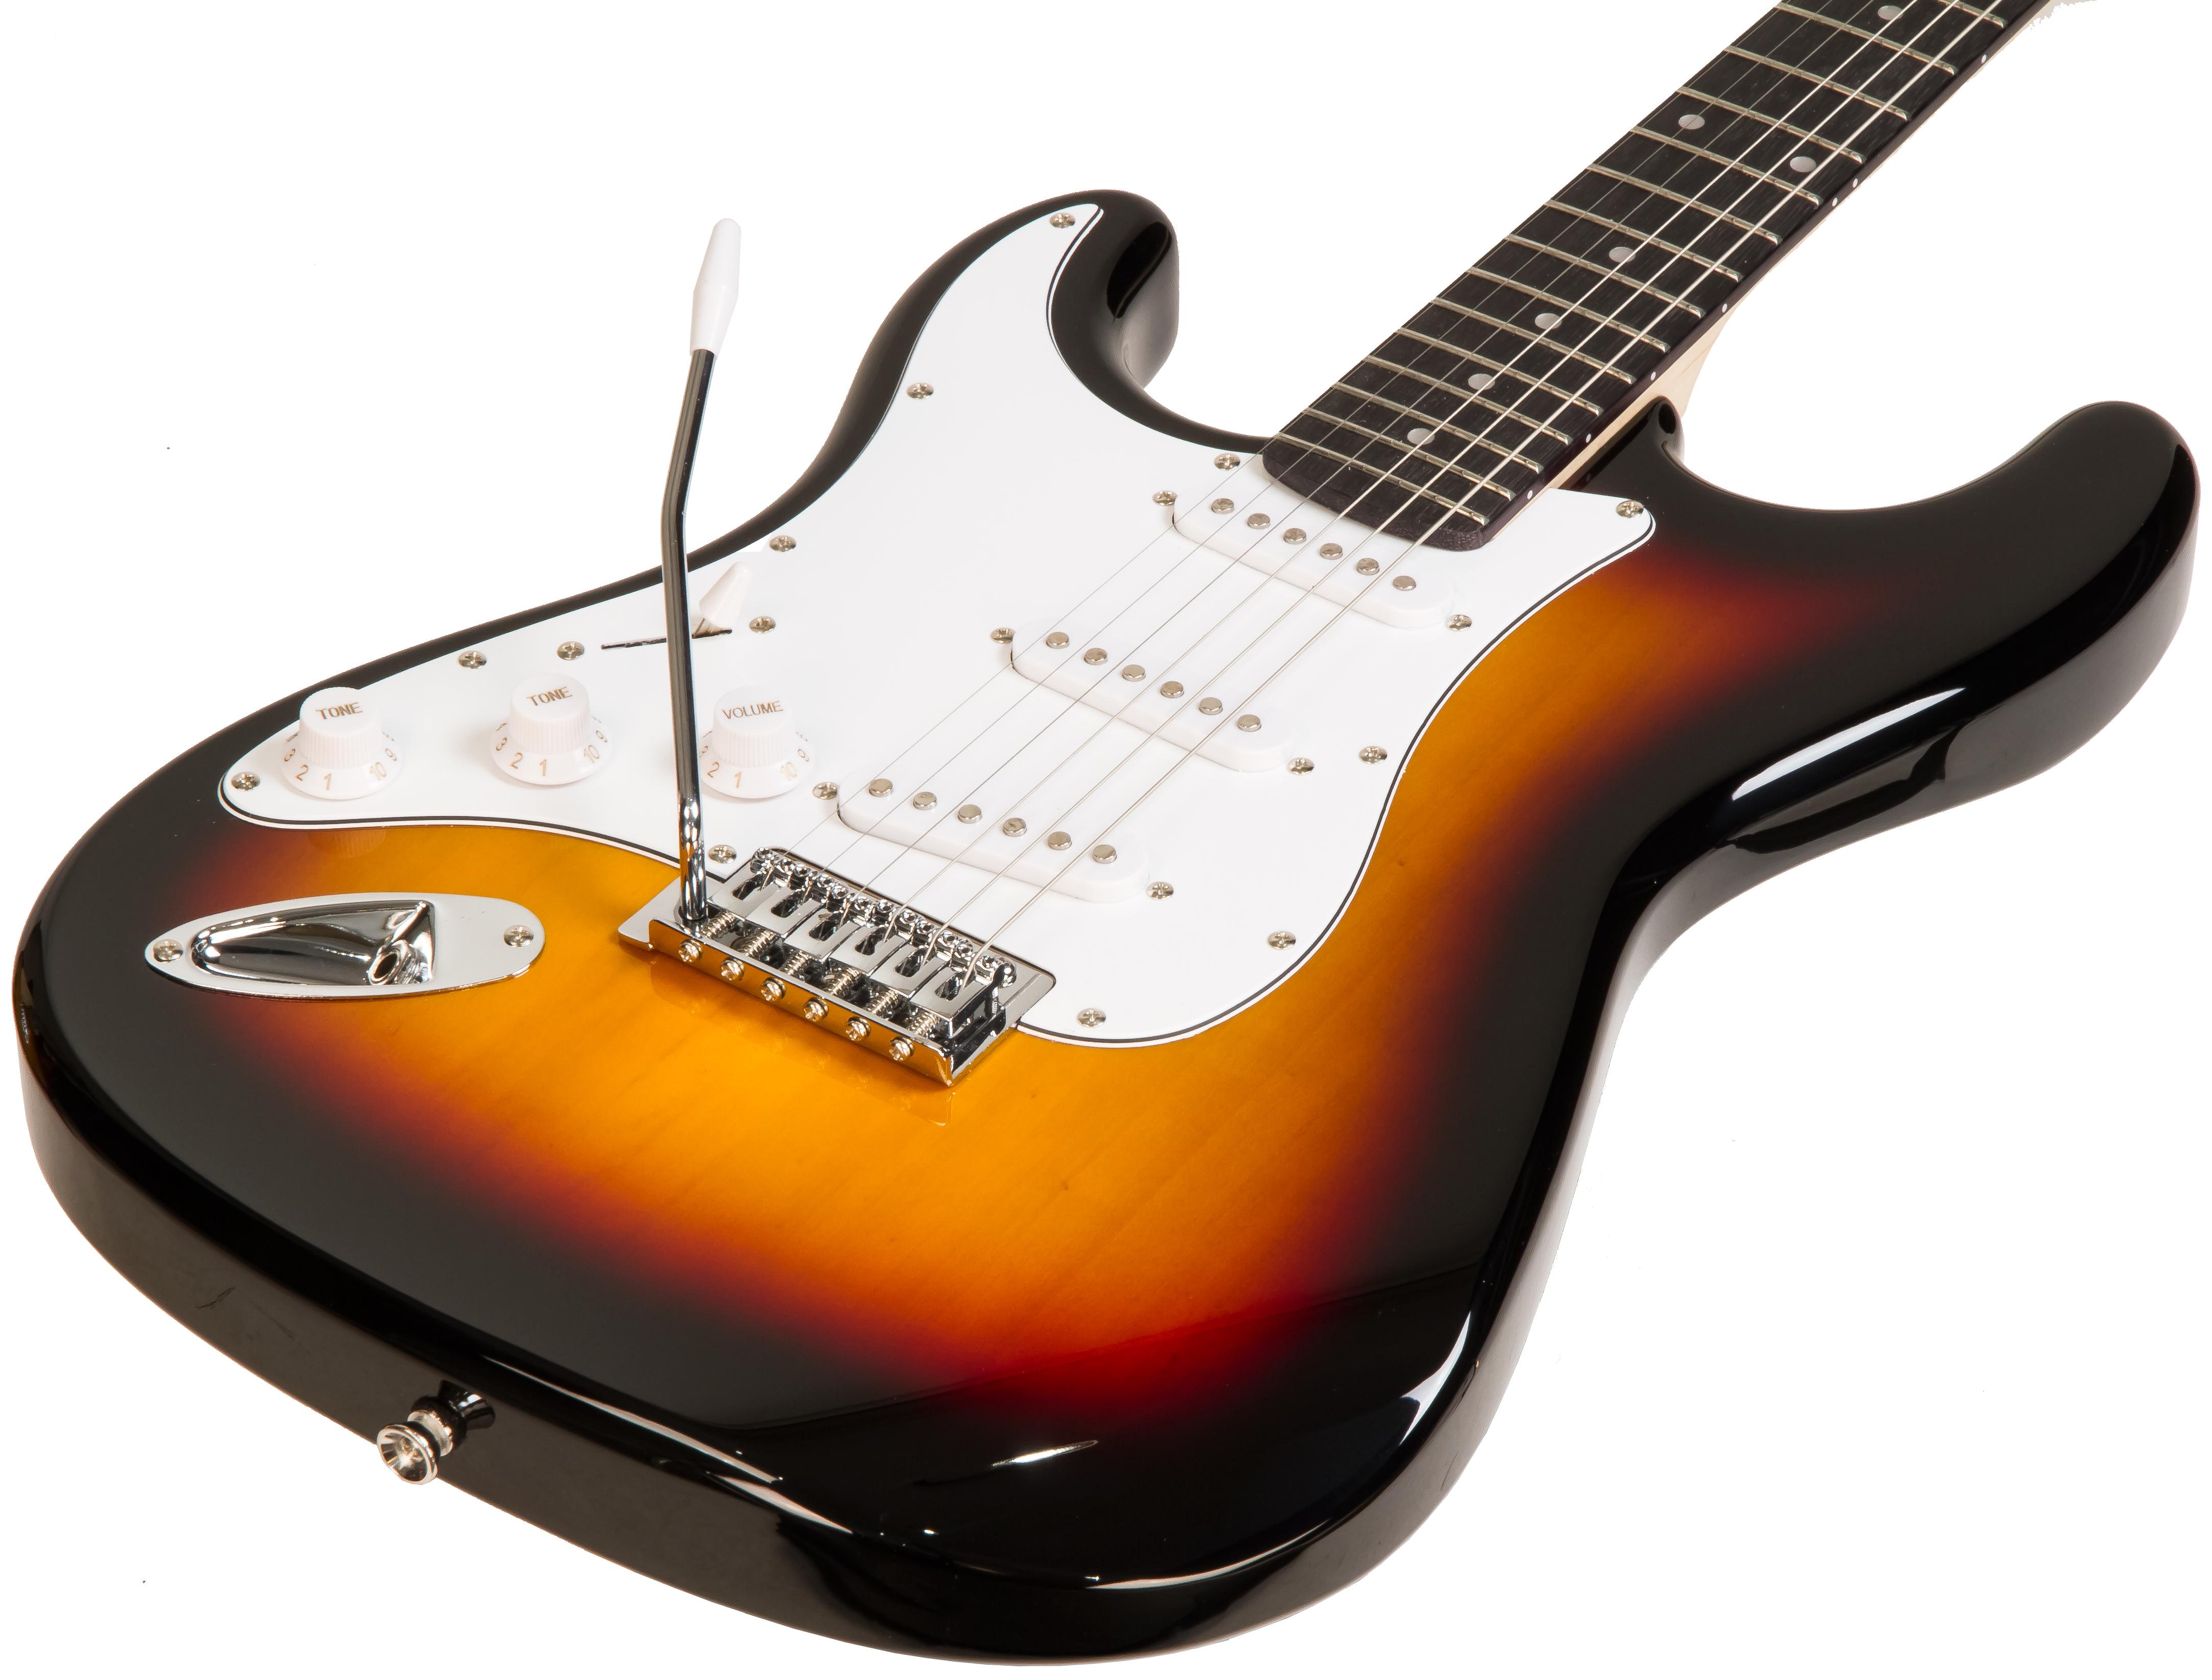 Eastone Str70t 3ts Lh Gaucher Sss Trem Pur - Sunburst - Guitarra electrica para zurdos - Variation 1